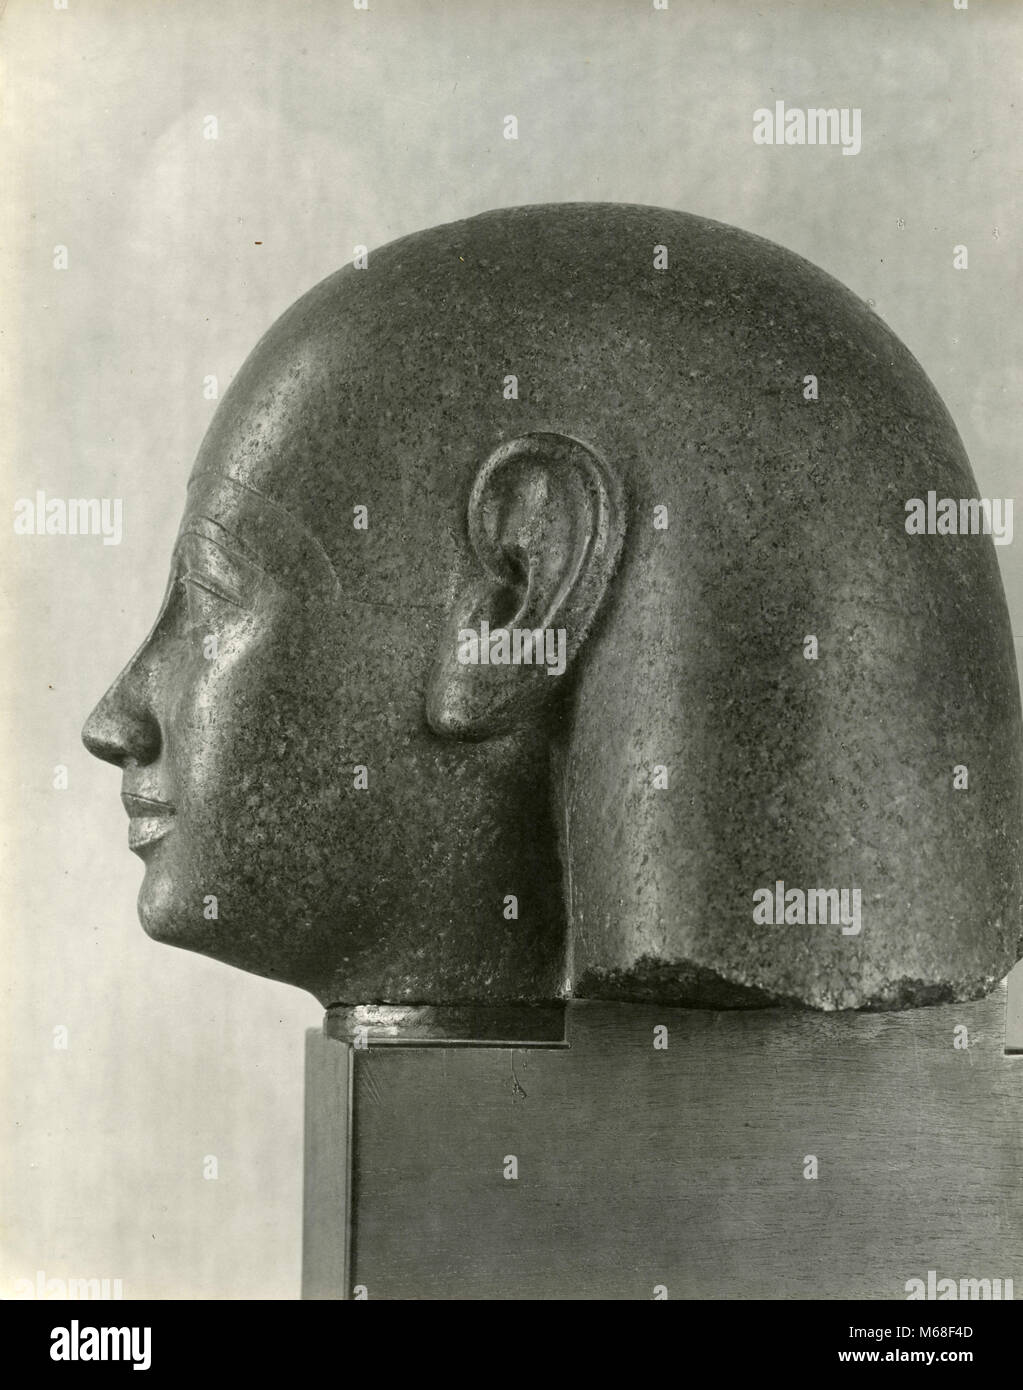 Head of Pharaoh, ancient Egyptian statue Stock Photo